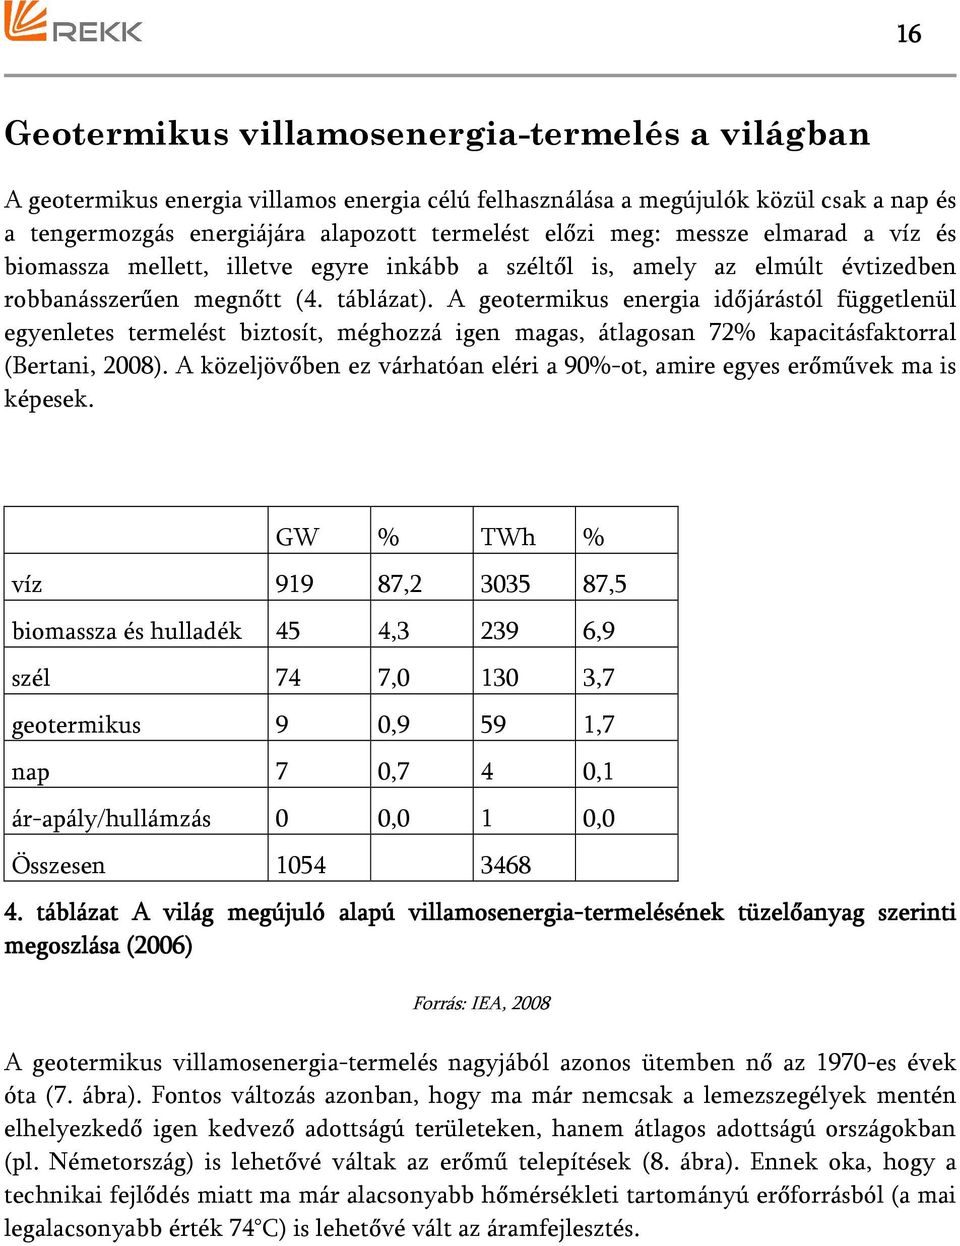 A geotermikus energia időjárástól függetlenül egyenletes termelést biztosít, méghozzá igen magas, átlagosan 72% kapacitásfaktorral (Bertani, 2008).